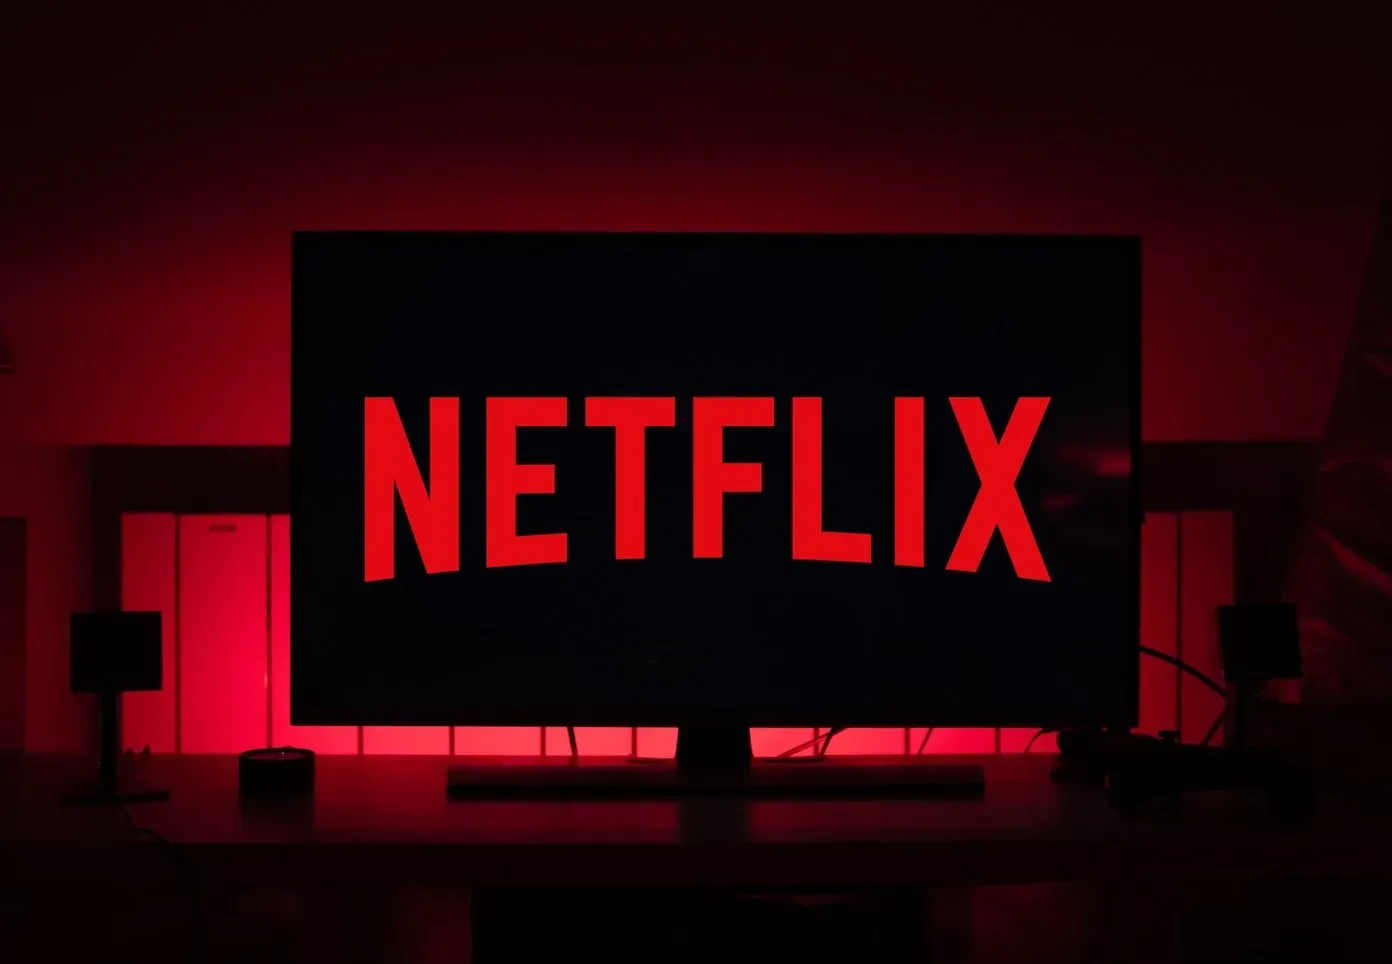 
											
											Misrlik advokat Netflix’ni sudga berdi
											
											